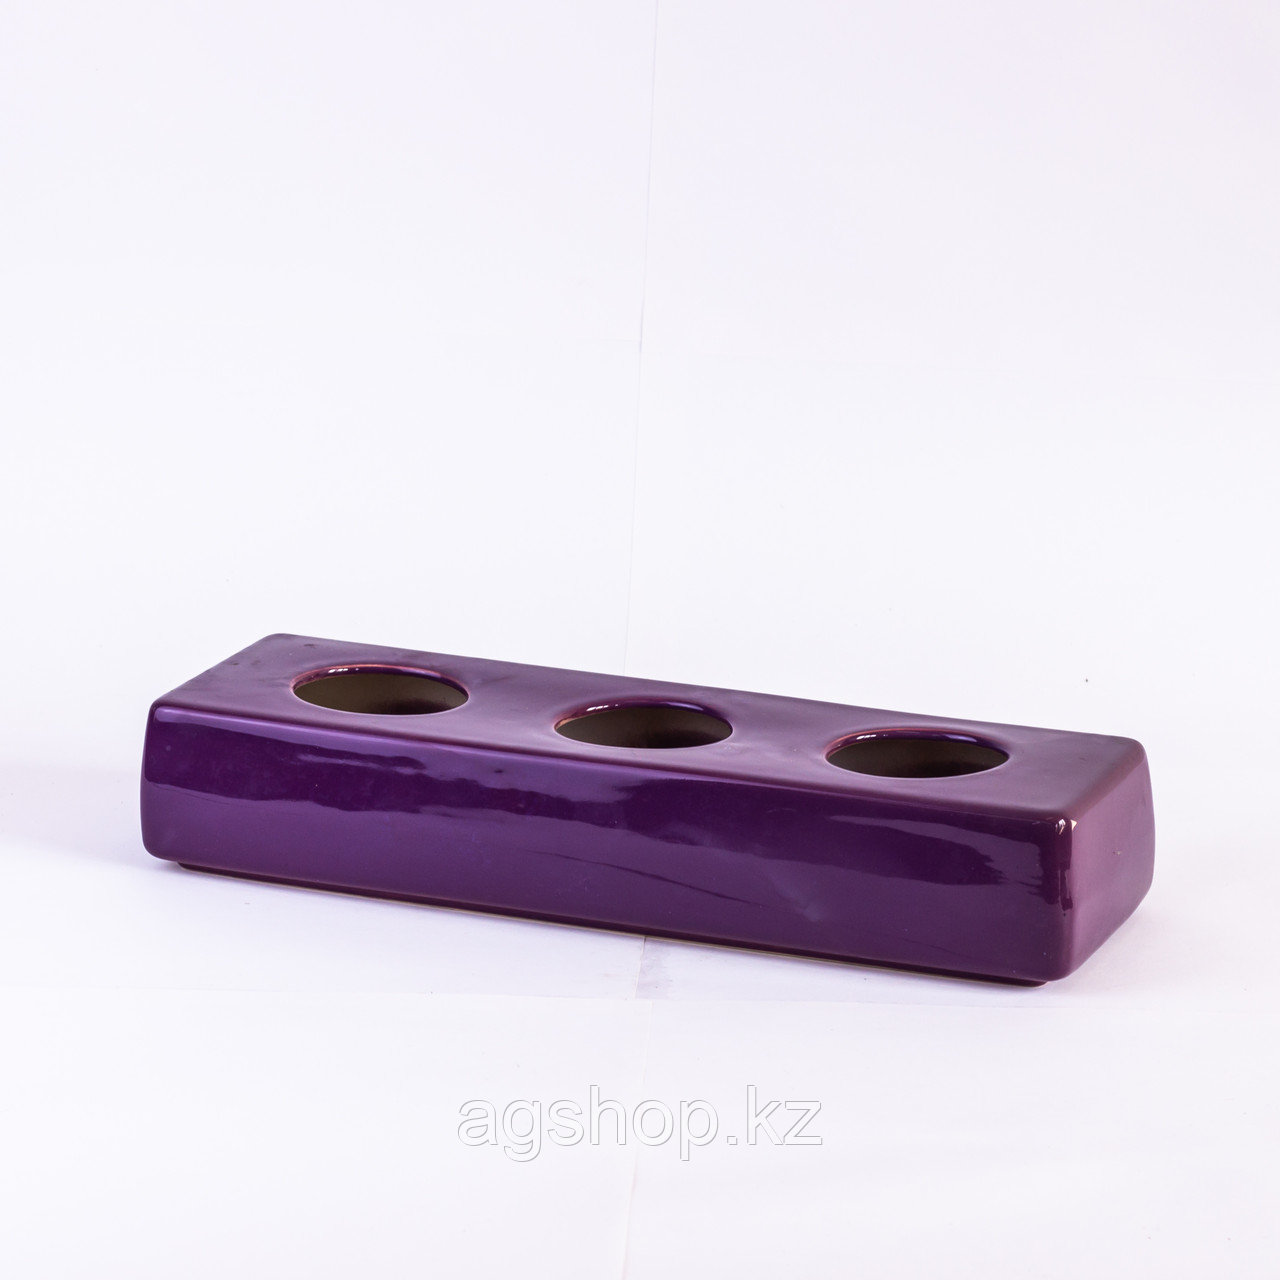 Ваза вертикальная CER3 прямоугольная из керамики фиолетовая глянцевая с тремя отверстиями